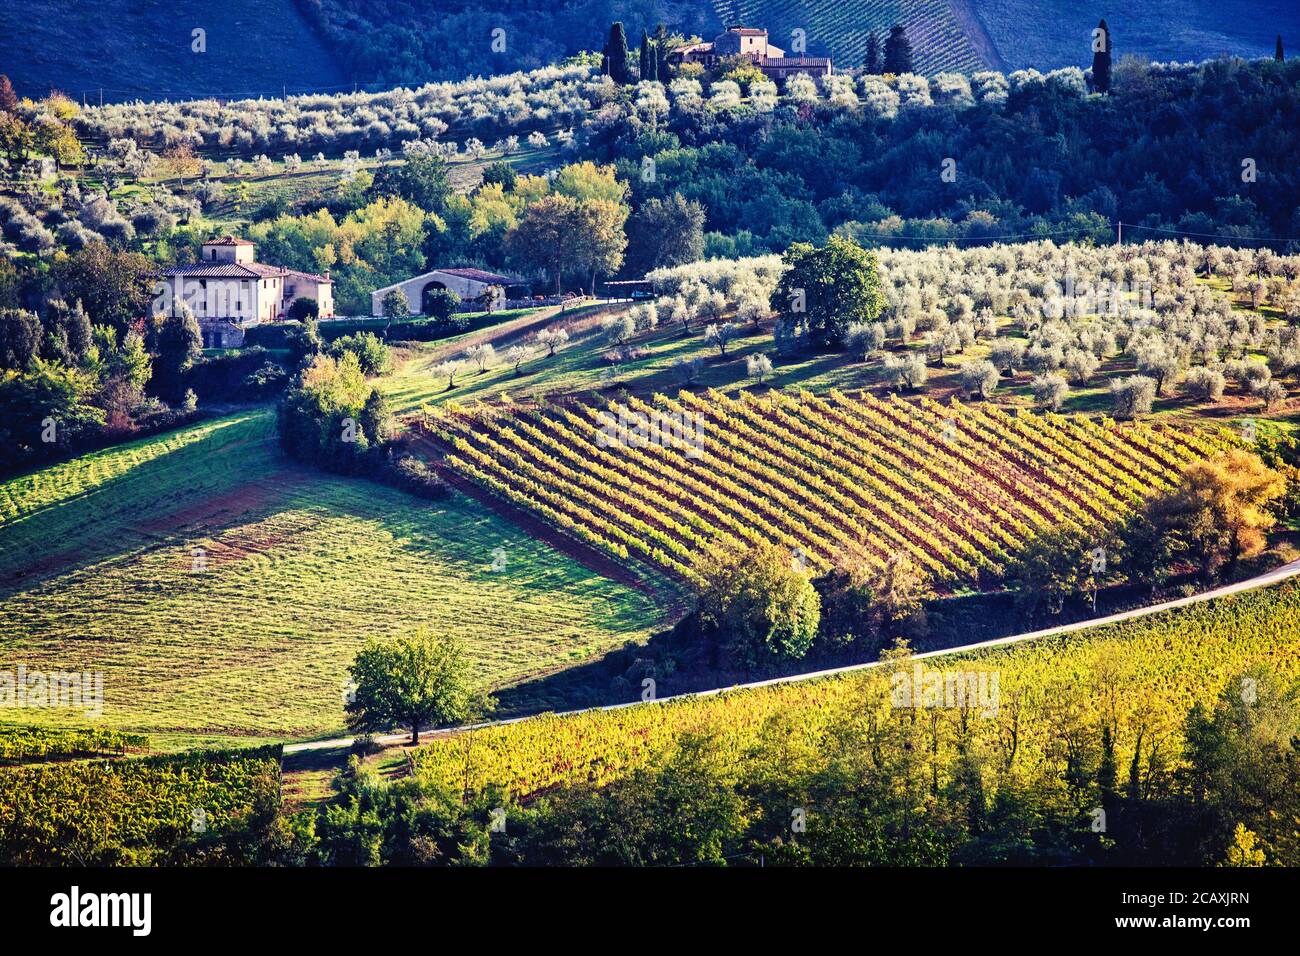 La campagne toscane avec ses vignobles et ses oliveraies autour de San Gimignano, en Italie. Banque D'Images